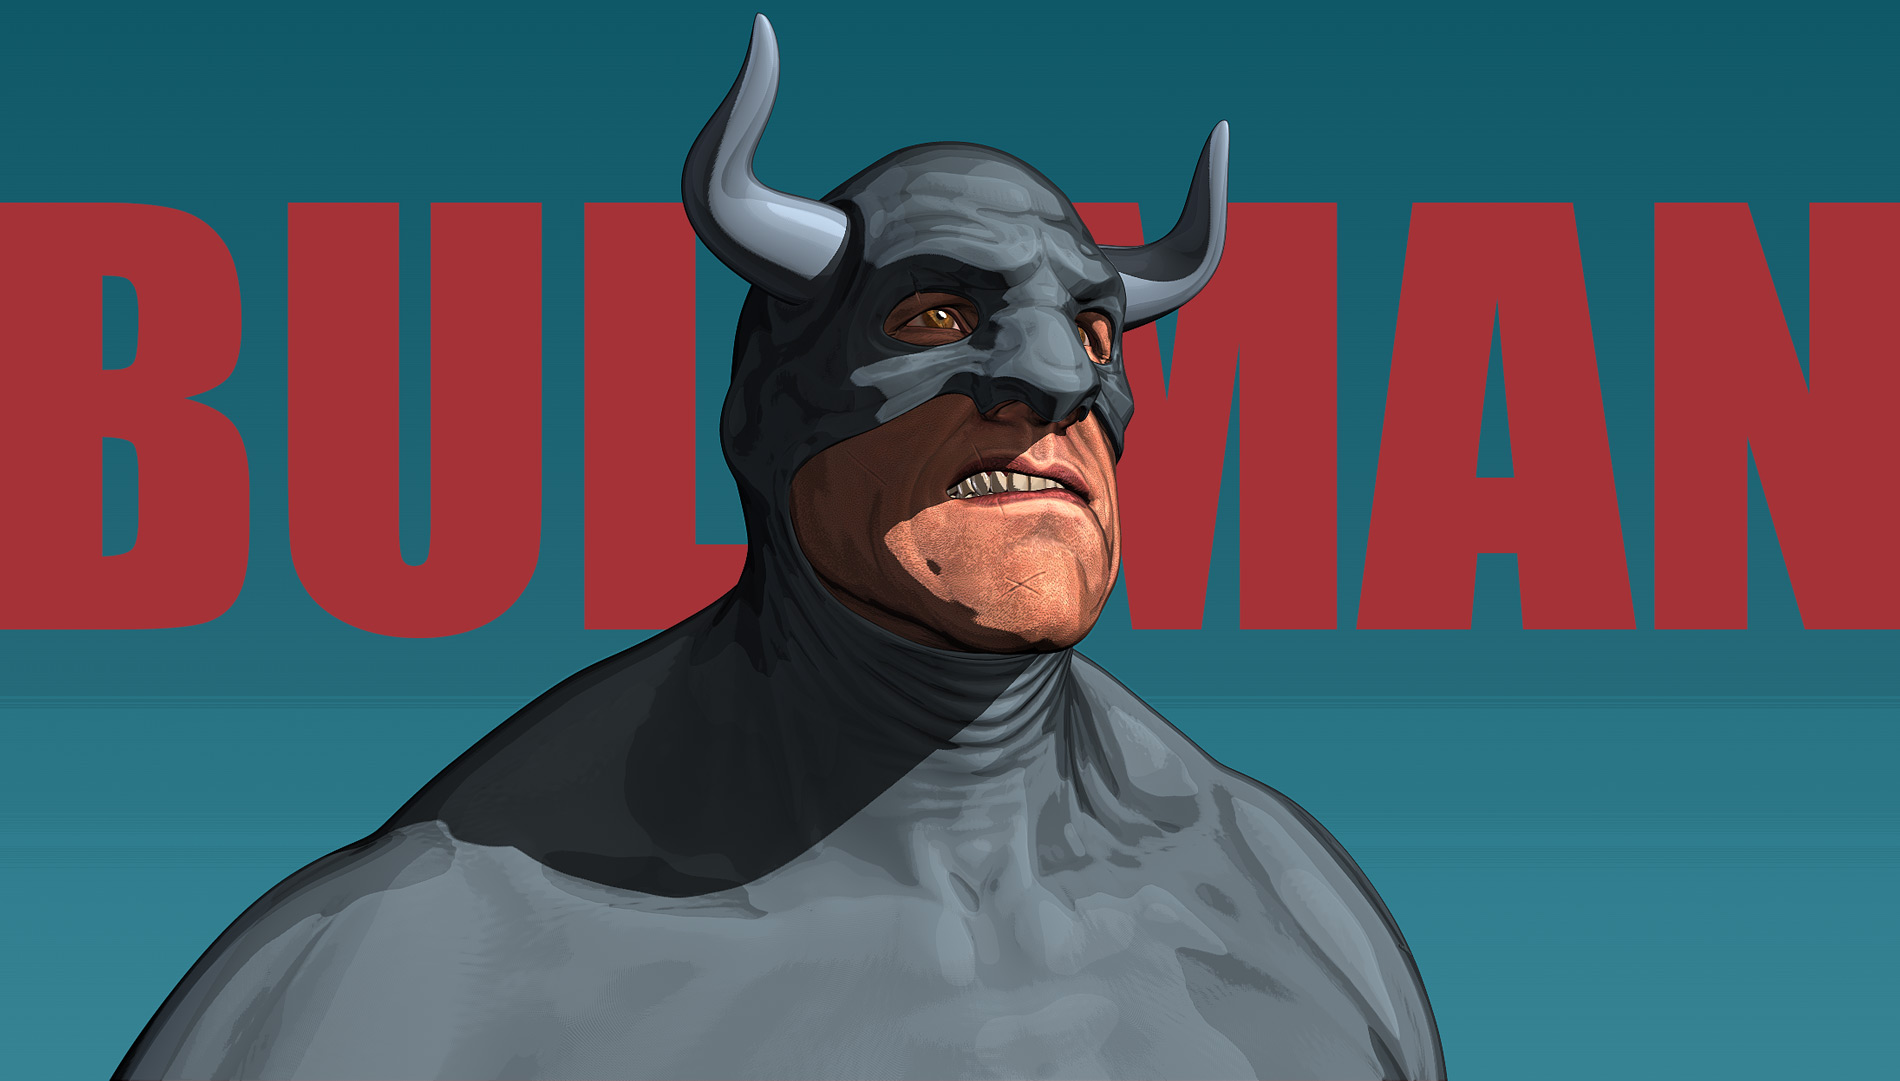 Bullman_01.jpg